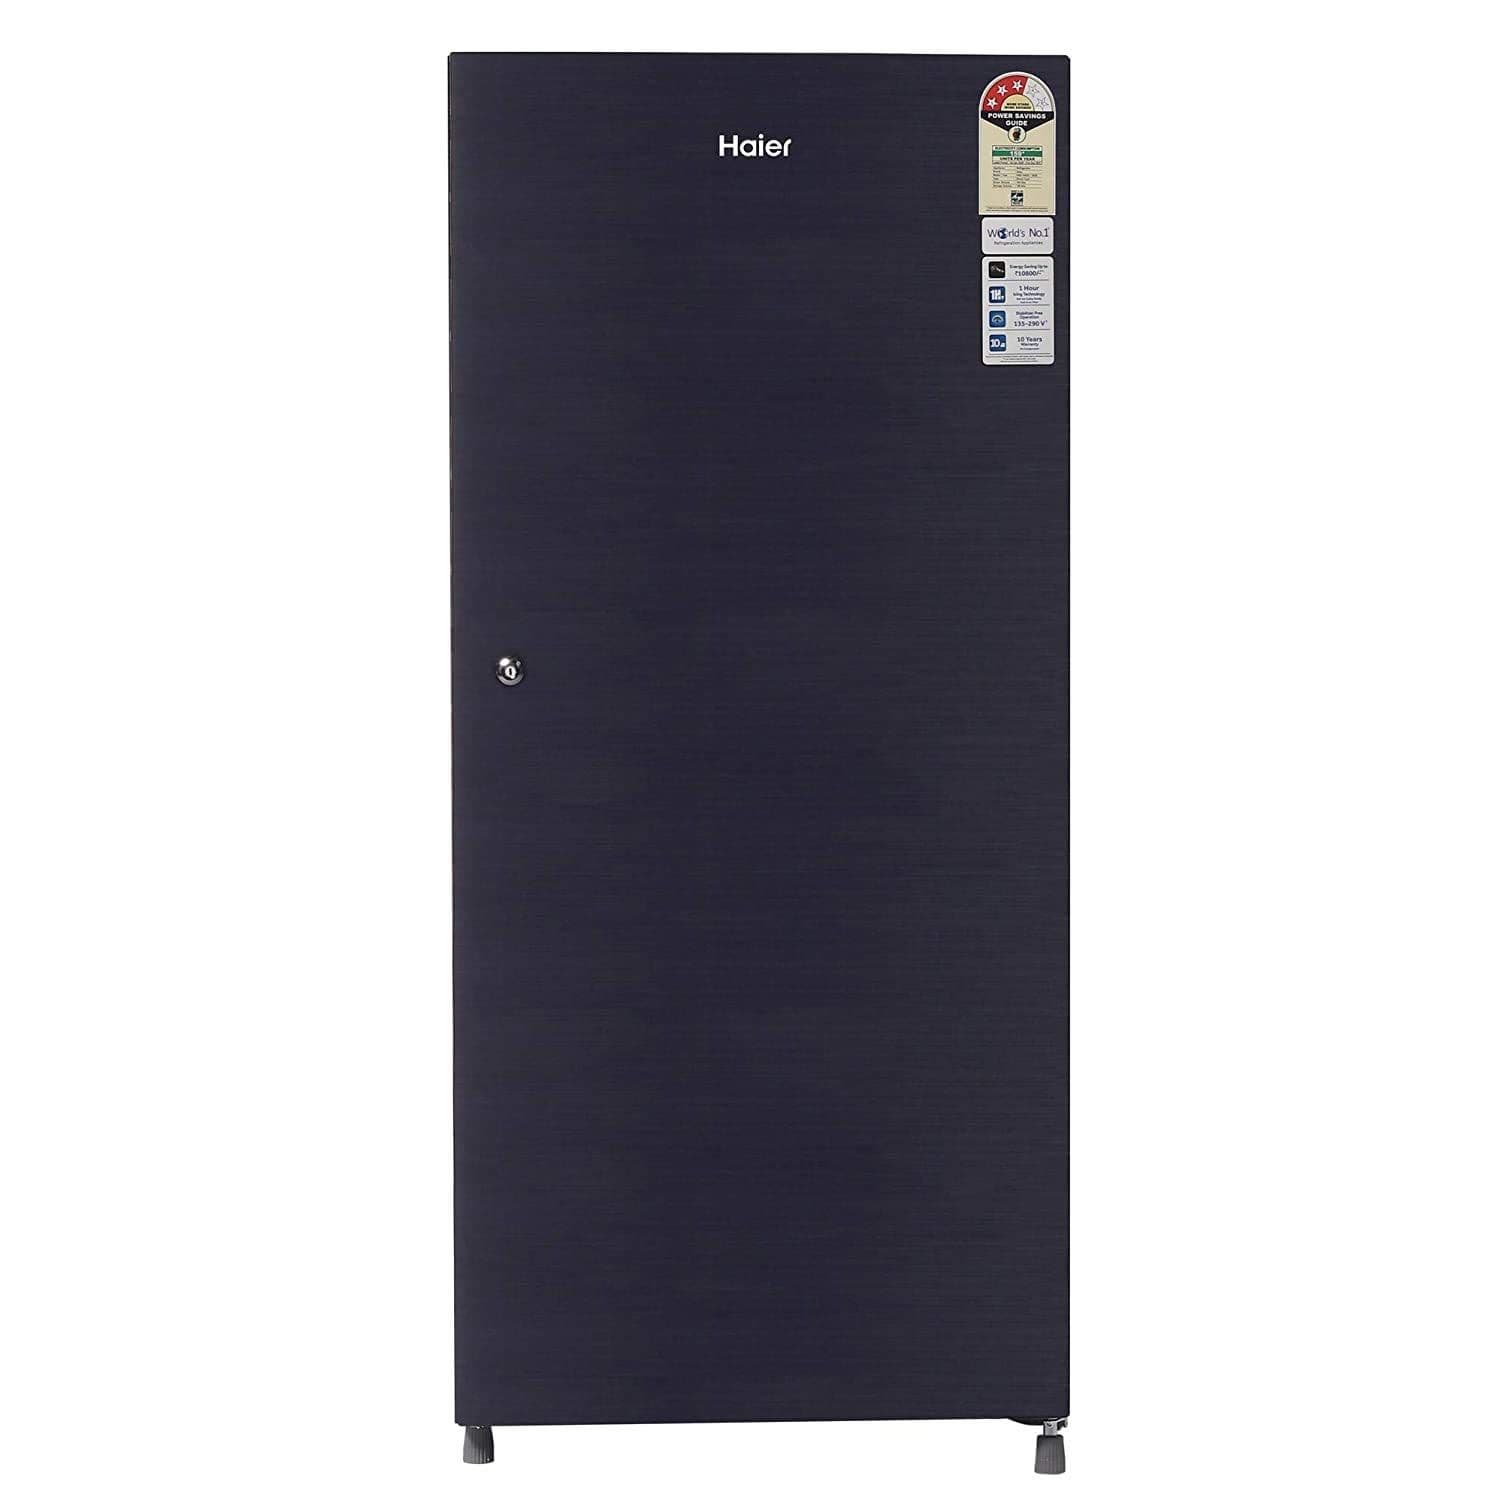 Haier HRD-1953CKS-E 195 Ltr Single Door Refrigerator